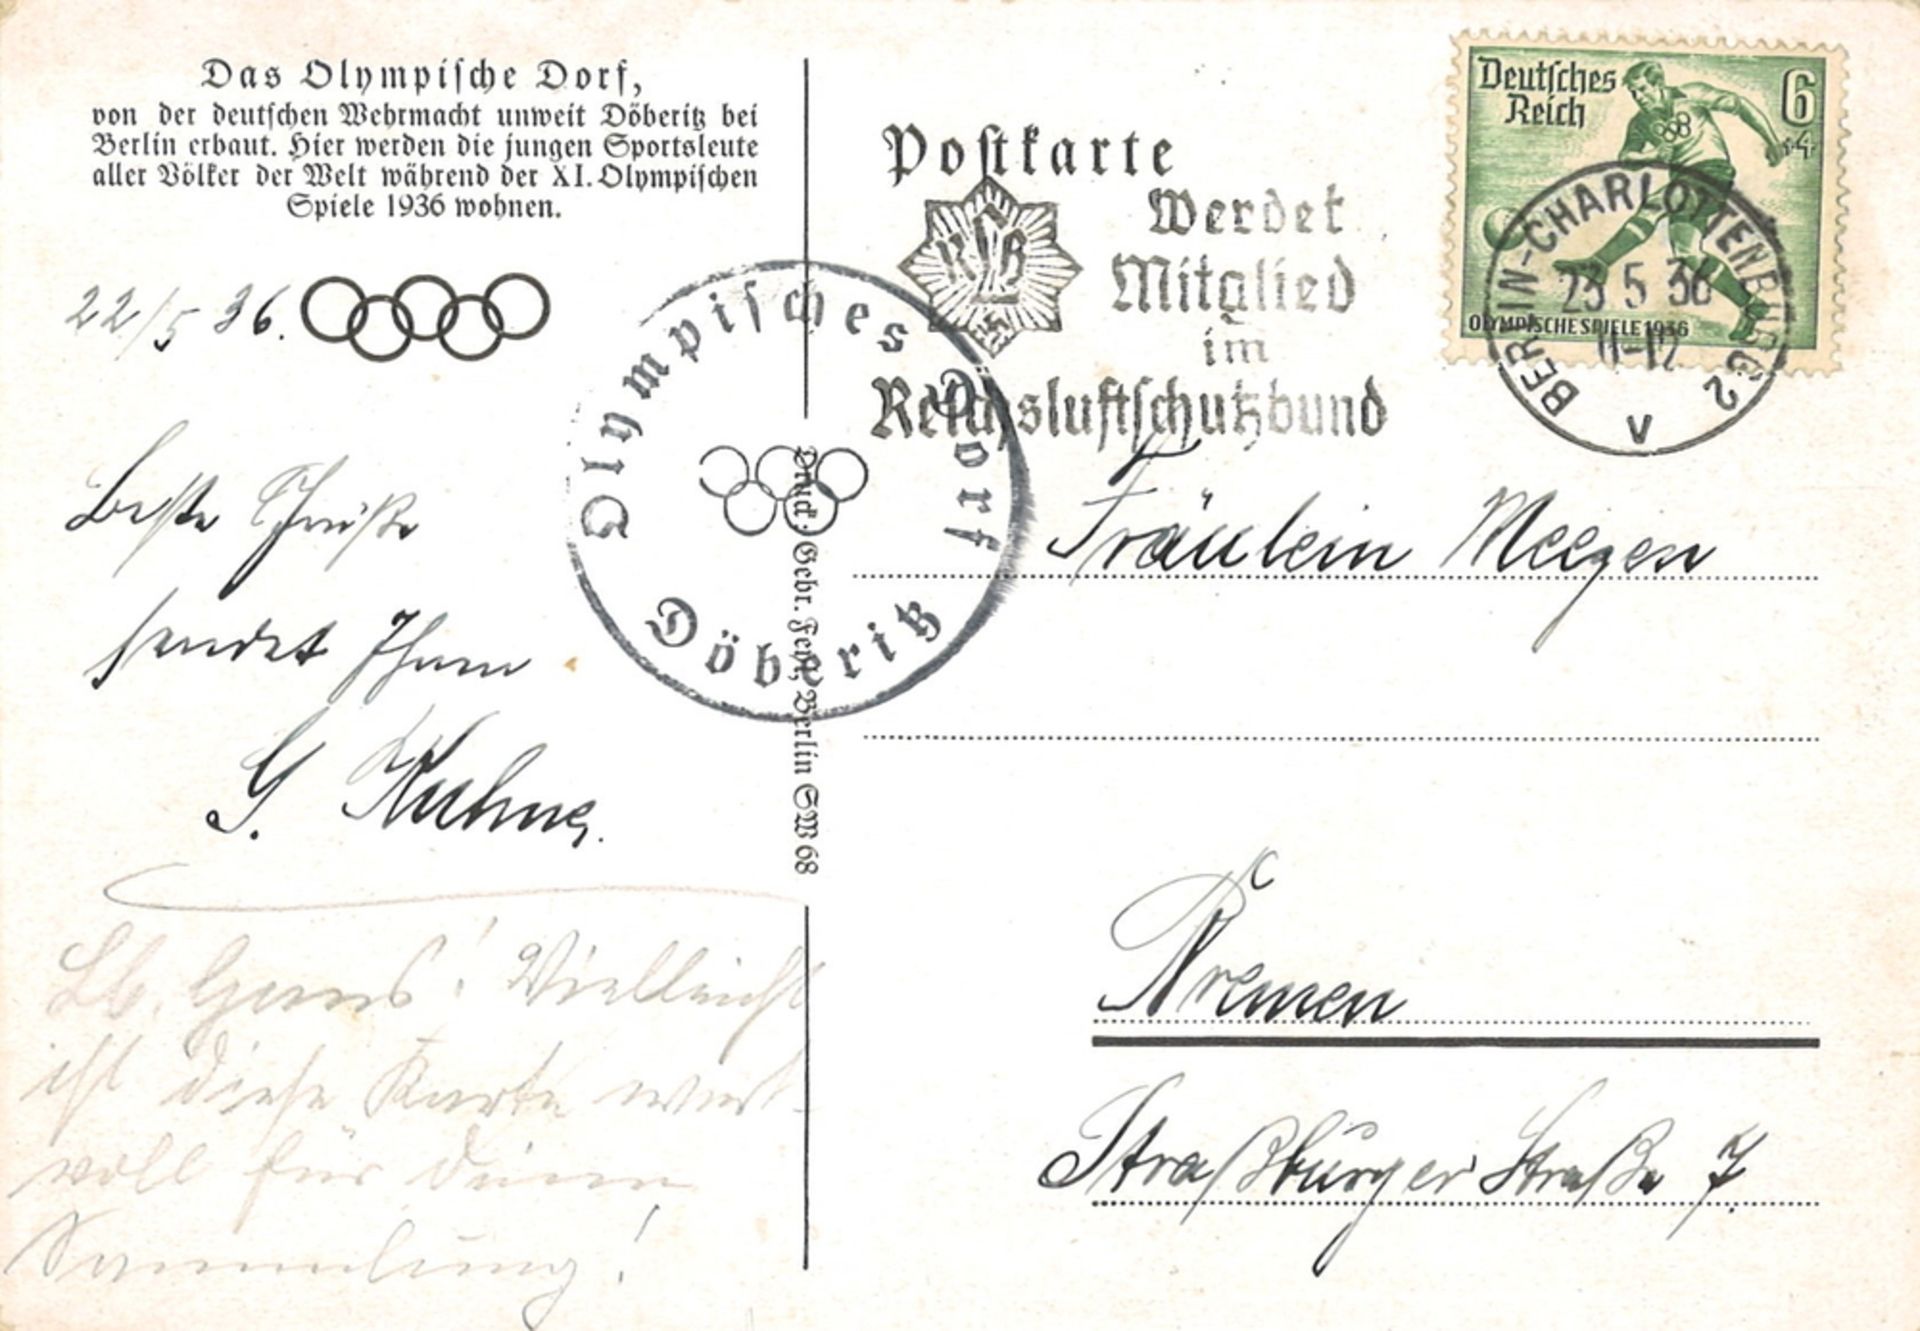 Postkarte werdet Mitglied im Reichsluftbund "Das Olympische Dorf" Berlin 1936, gelaufen - Image 2 of 2